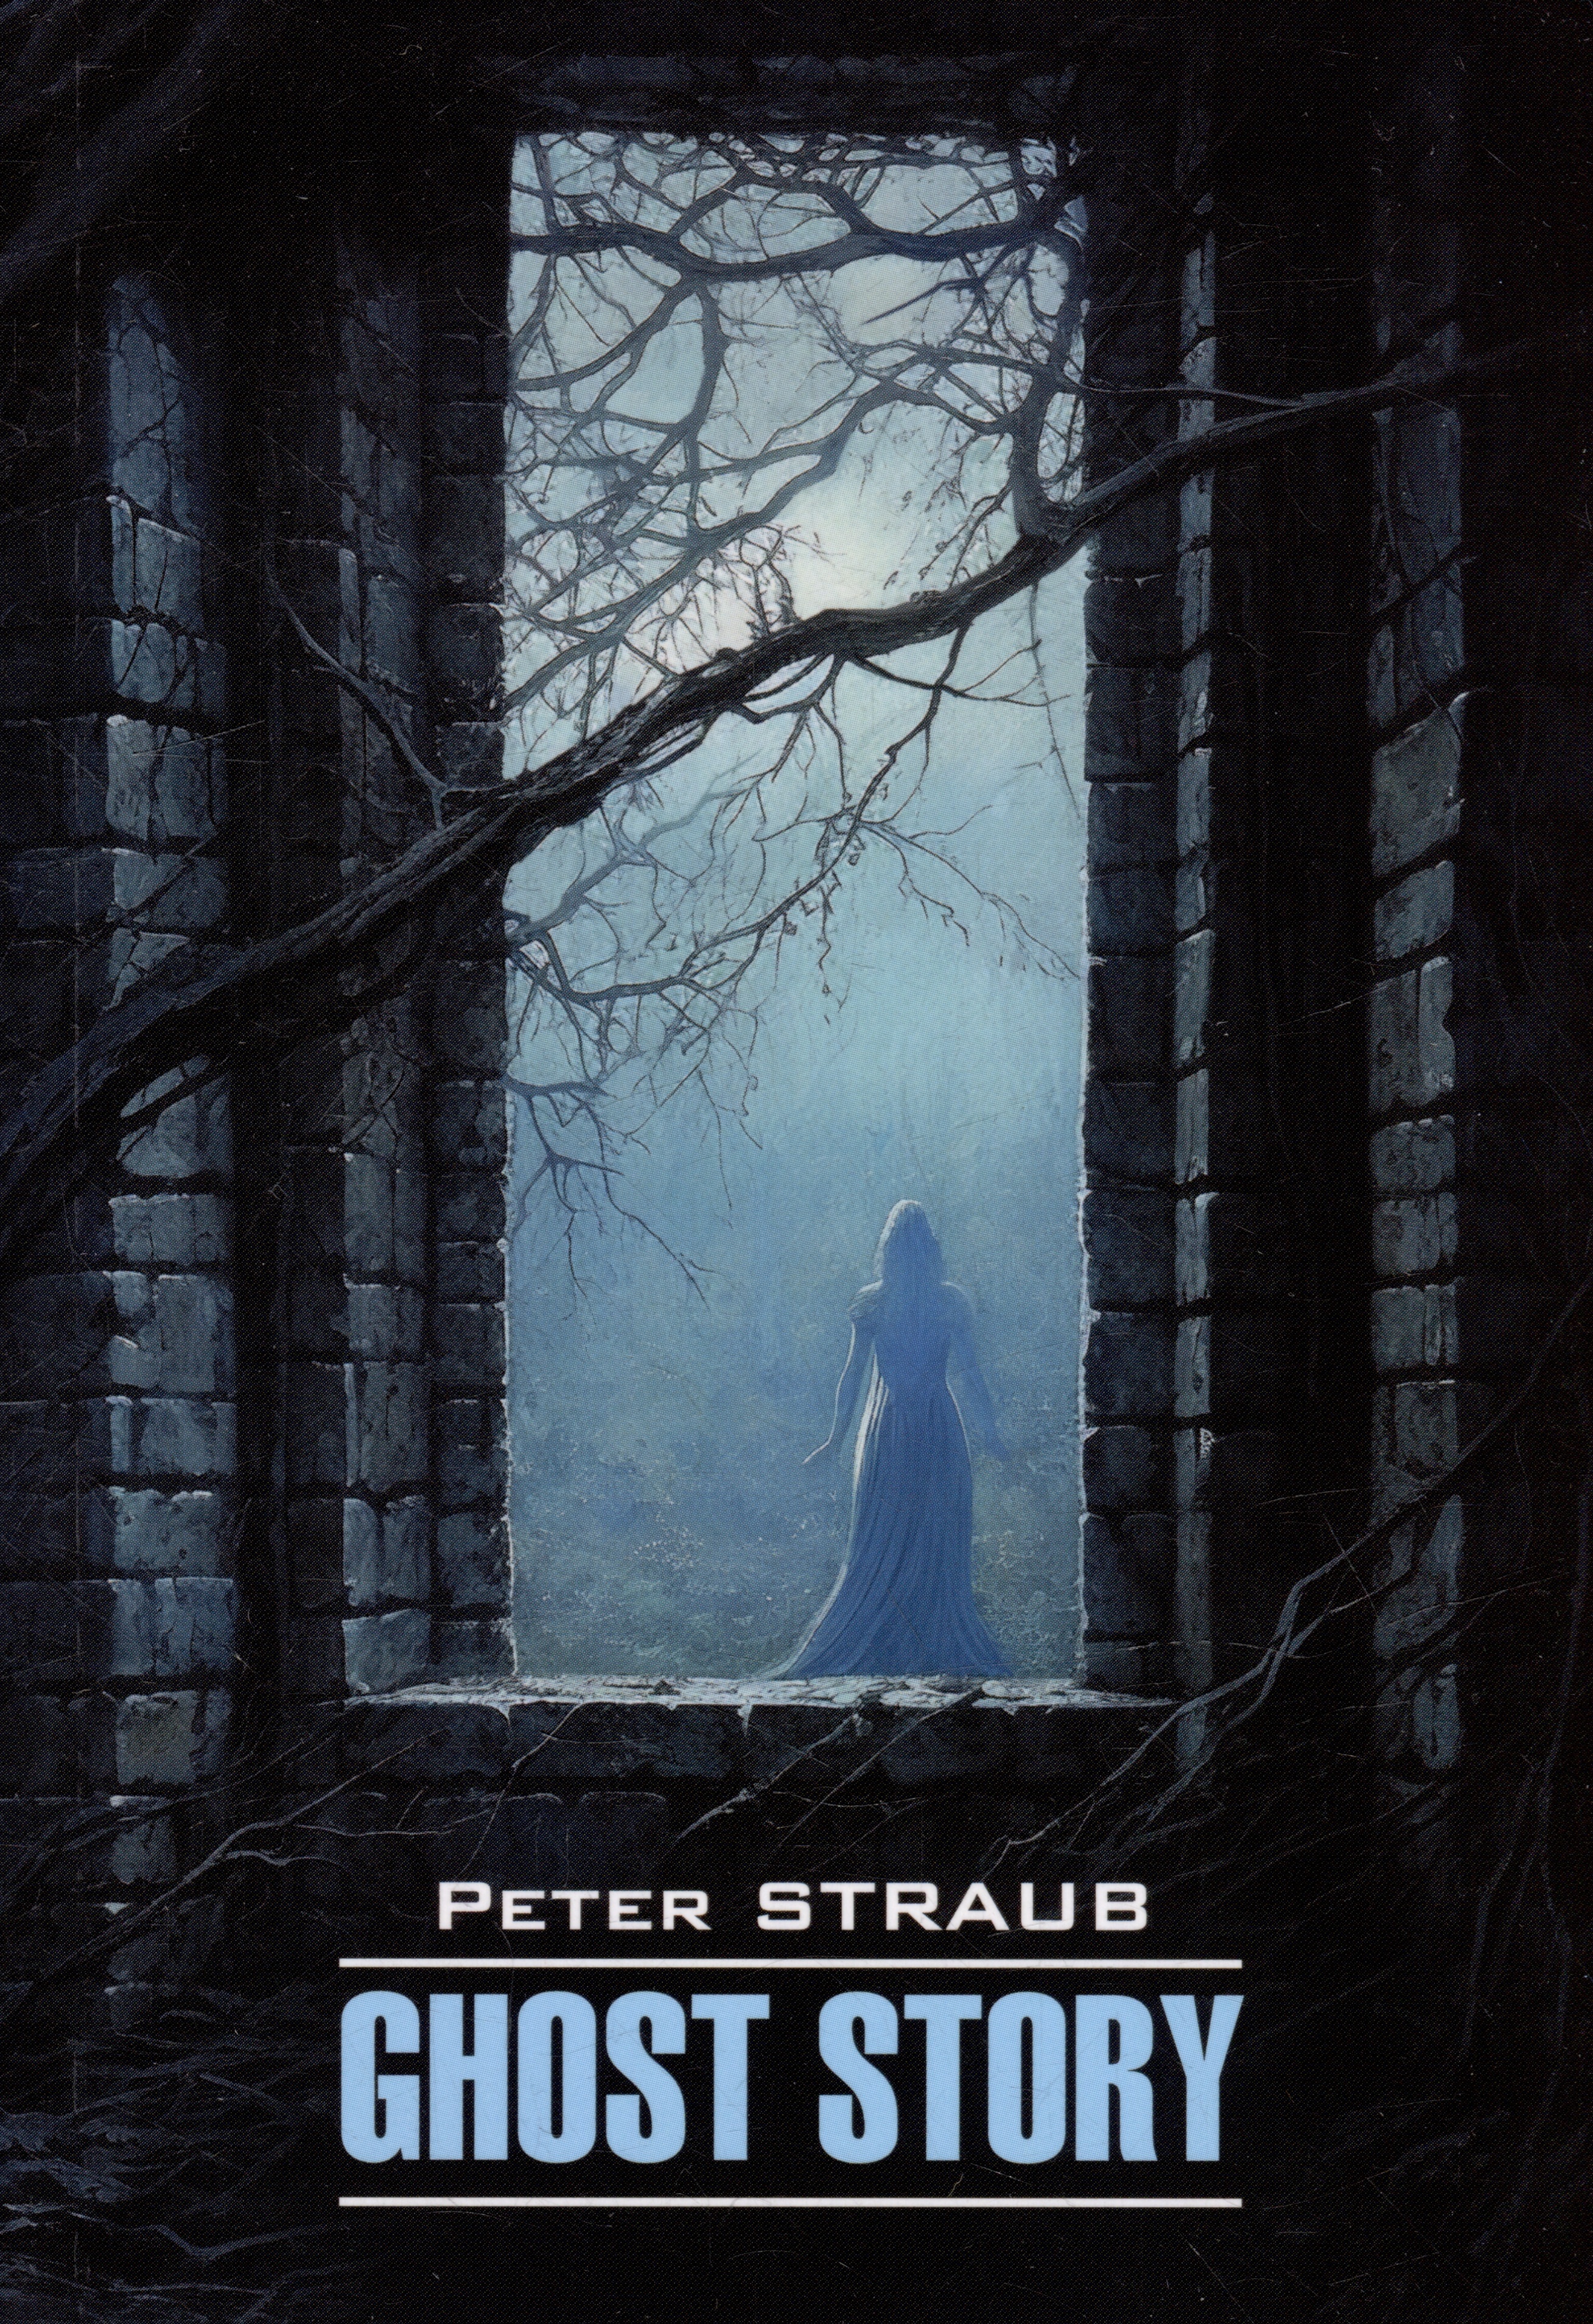 Страуб Питер - История с привидениями